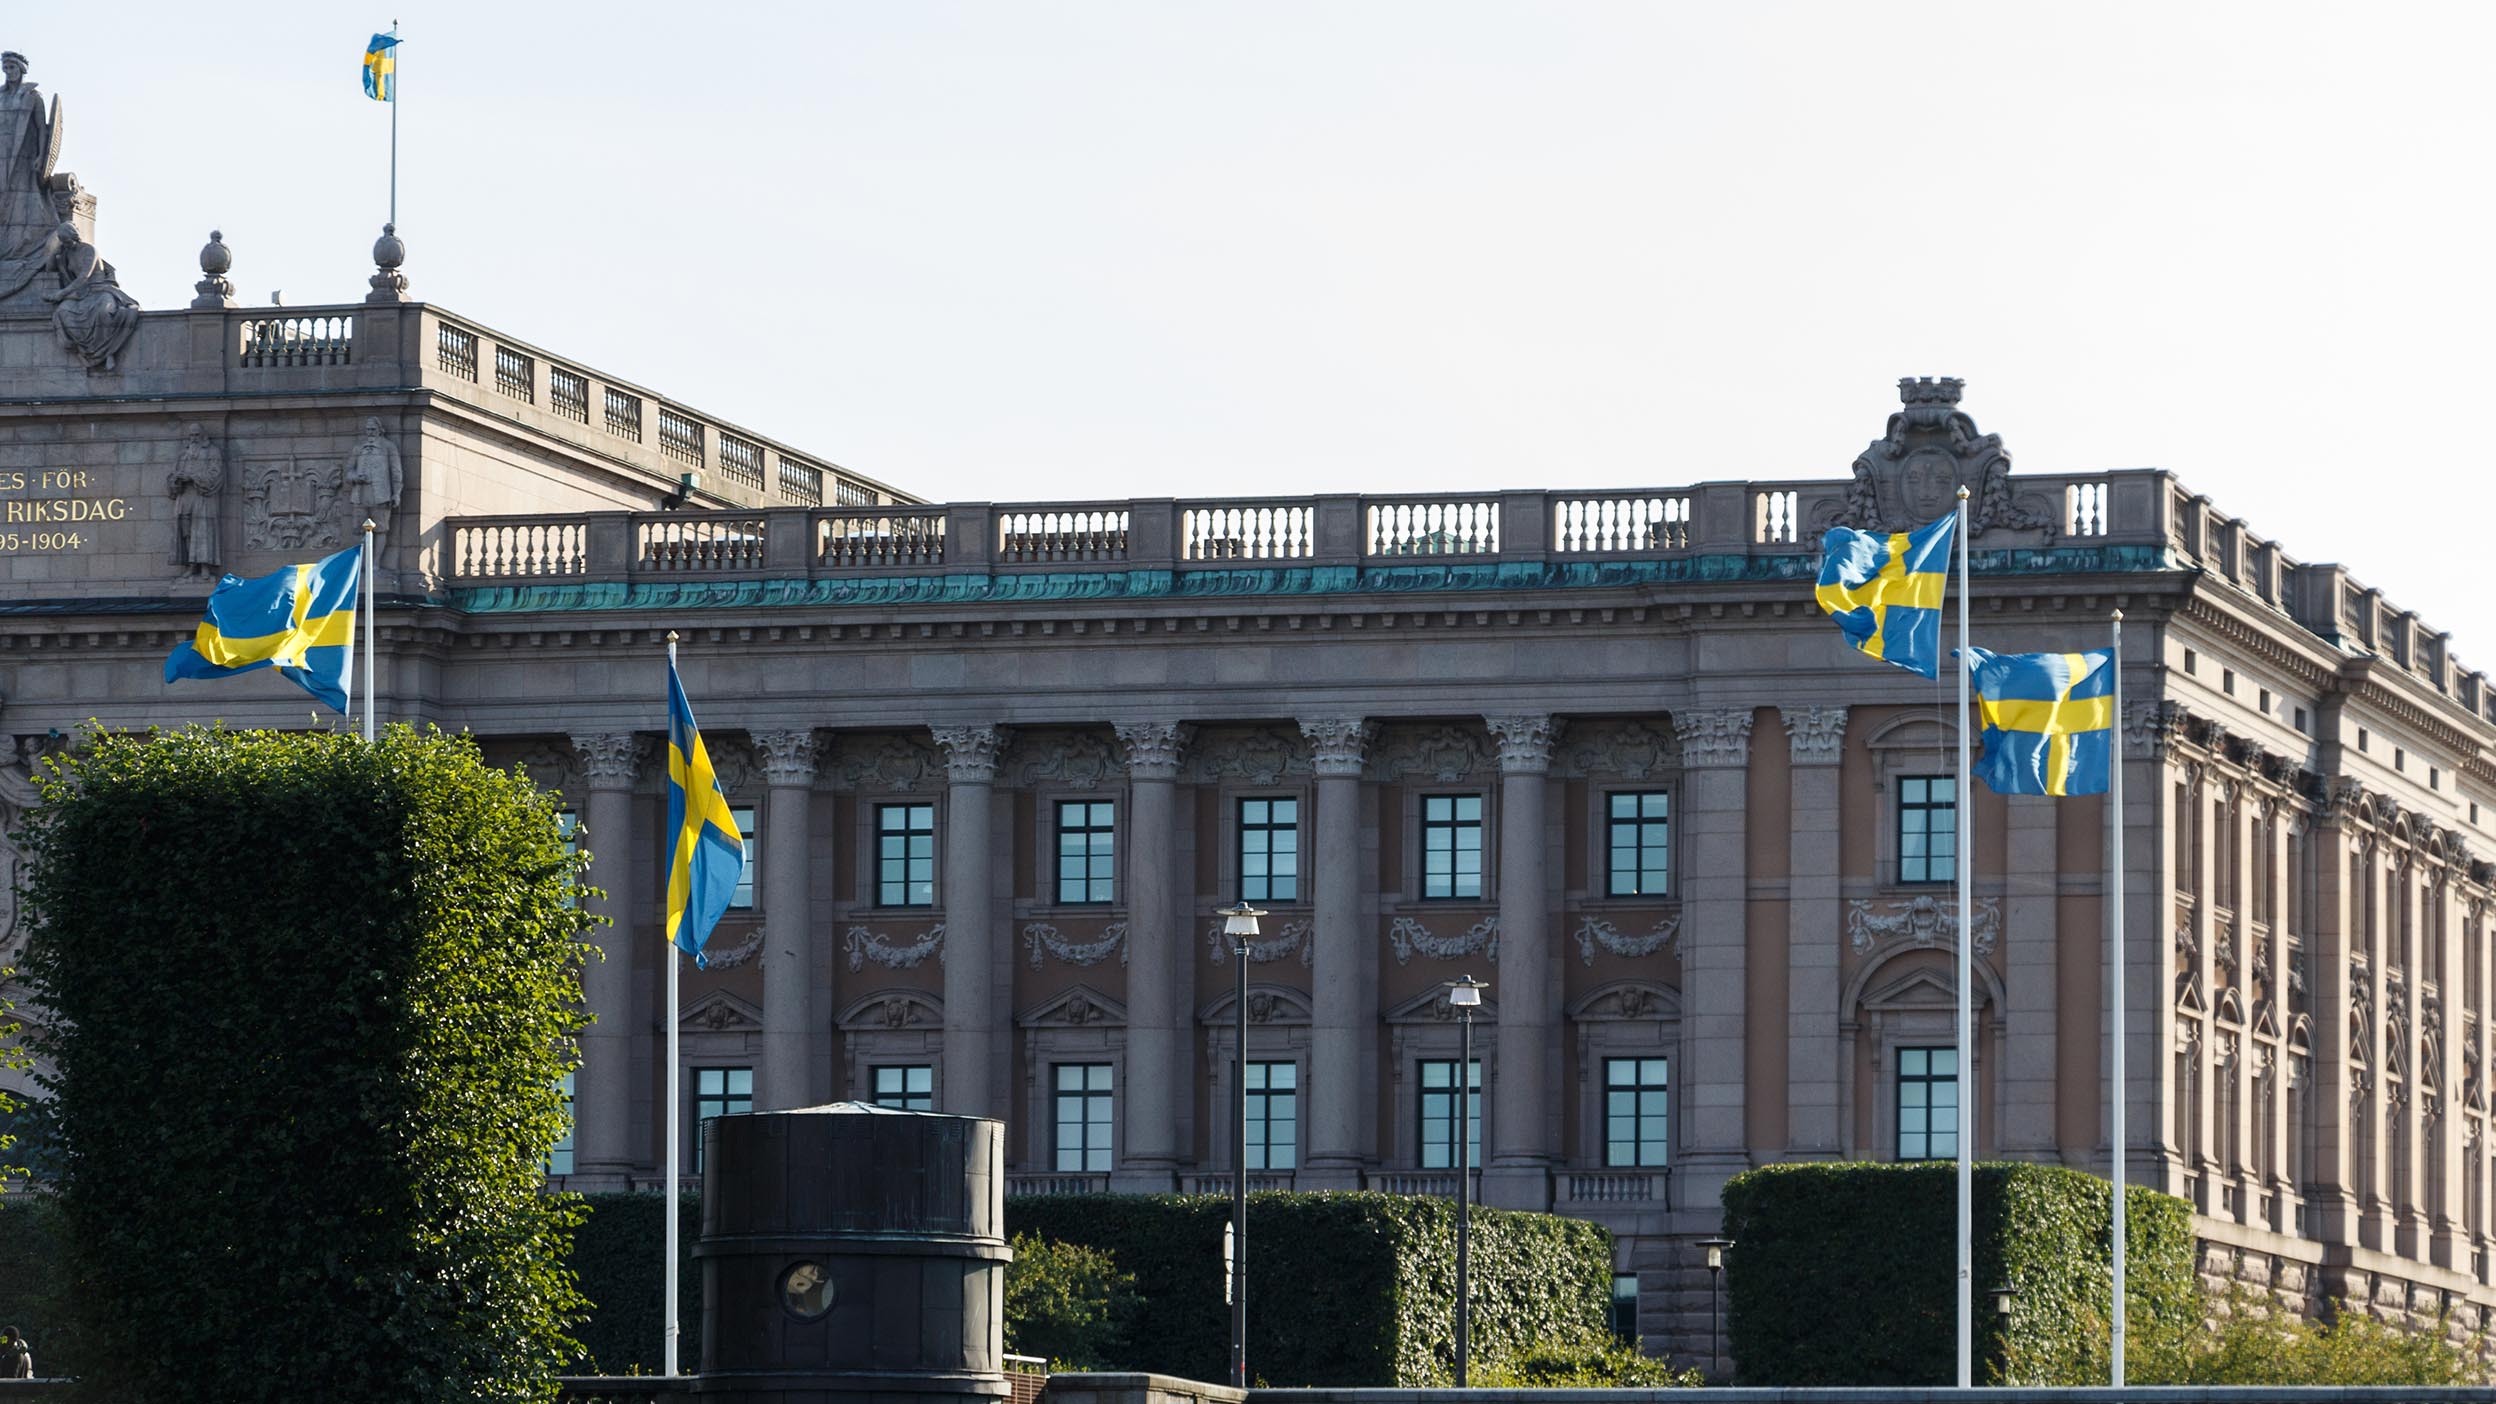 Sveriges Riksdag - Parliament House in Stockholm, Gamla Stan, Sweden